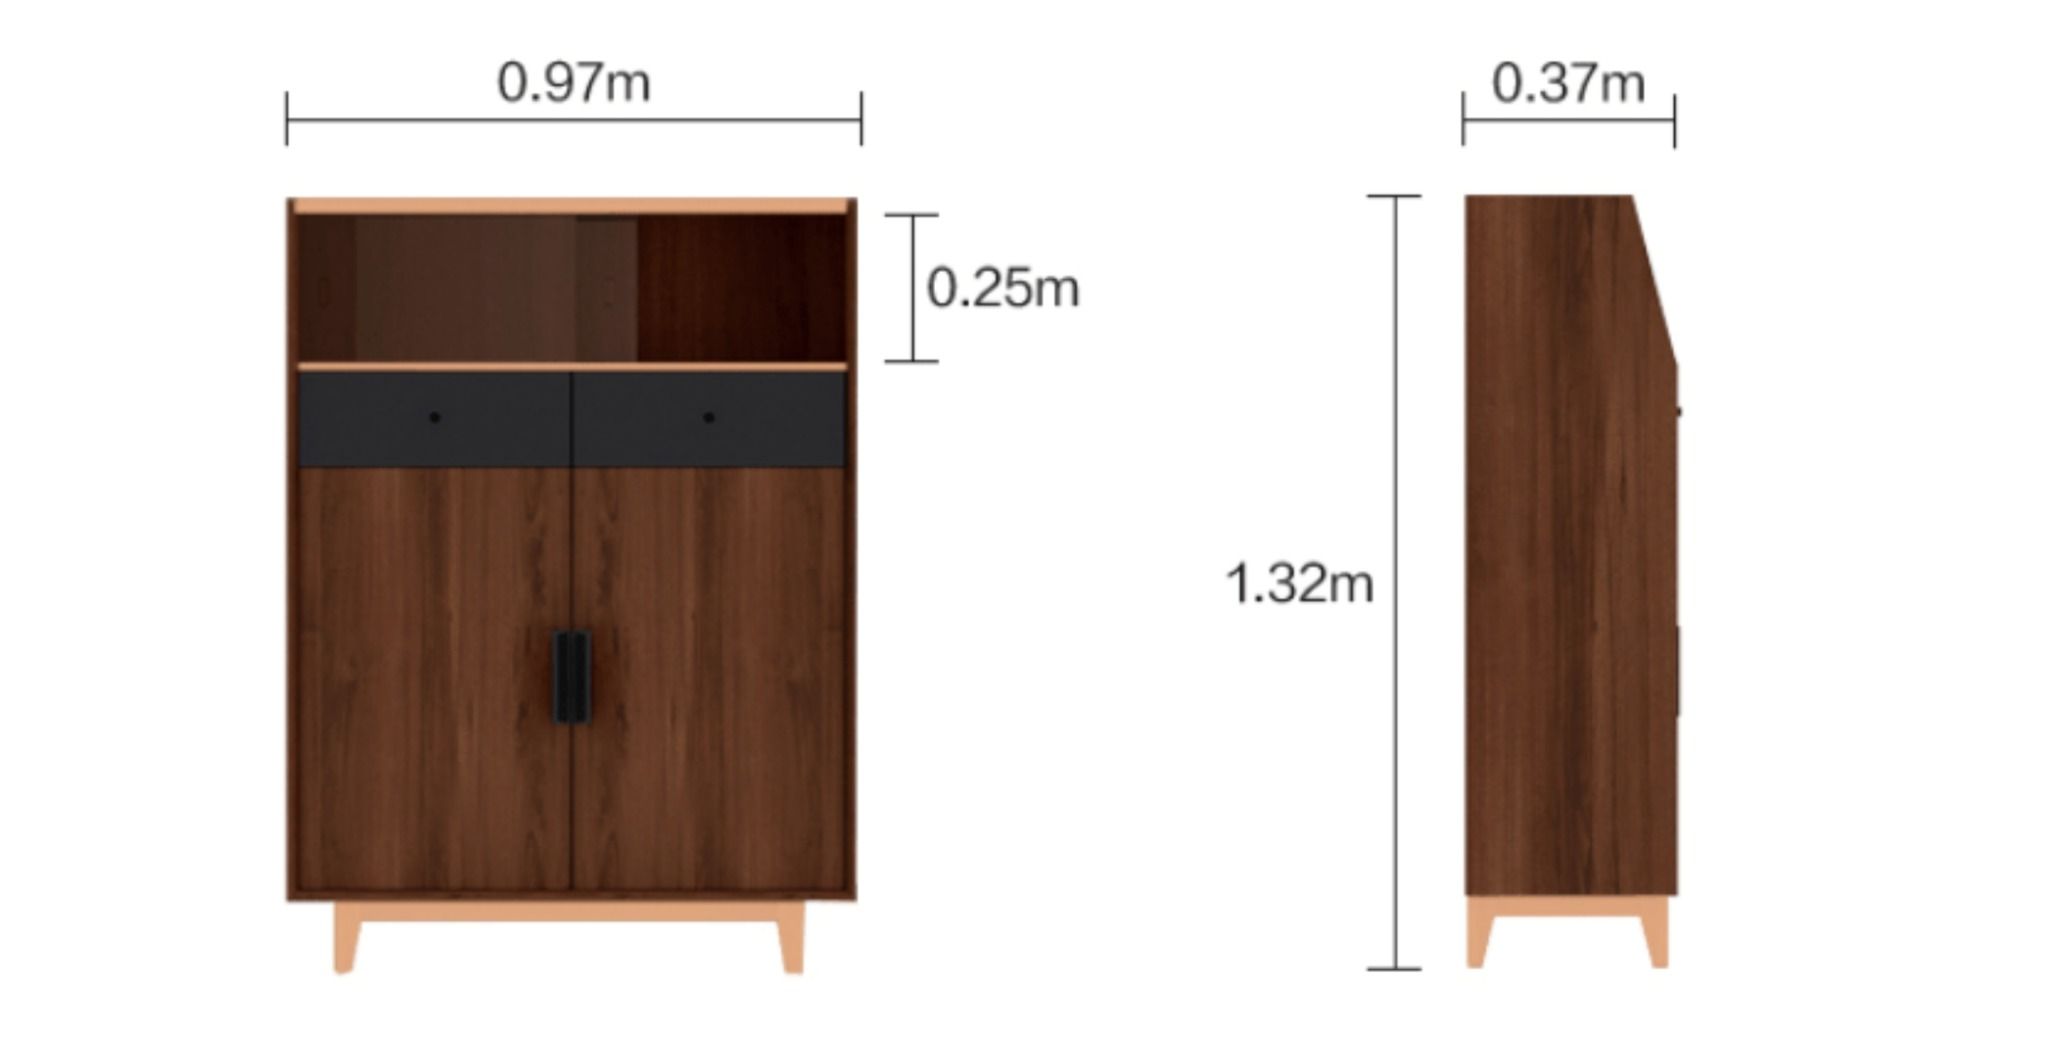  Tủ đựng giày gỗ chất lượng cao DTG16 